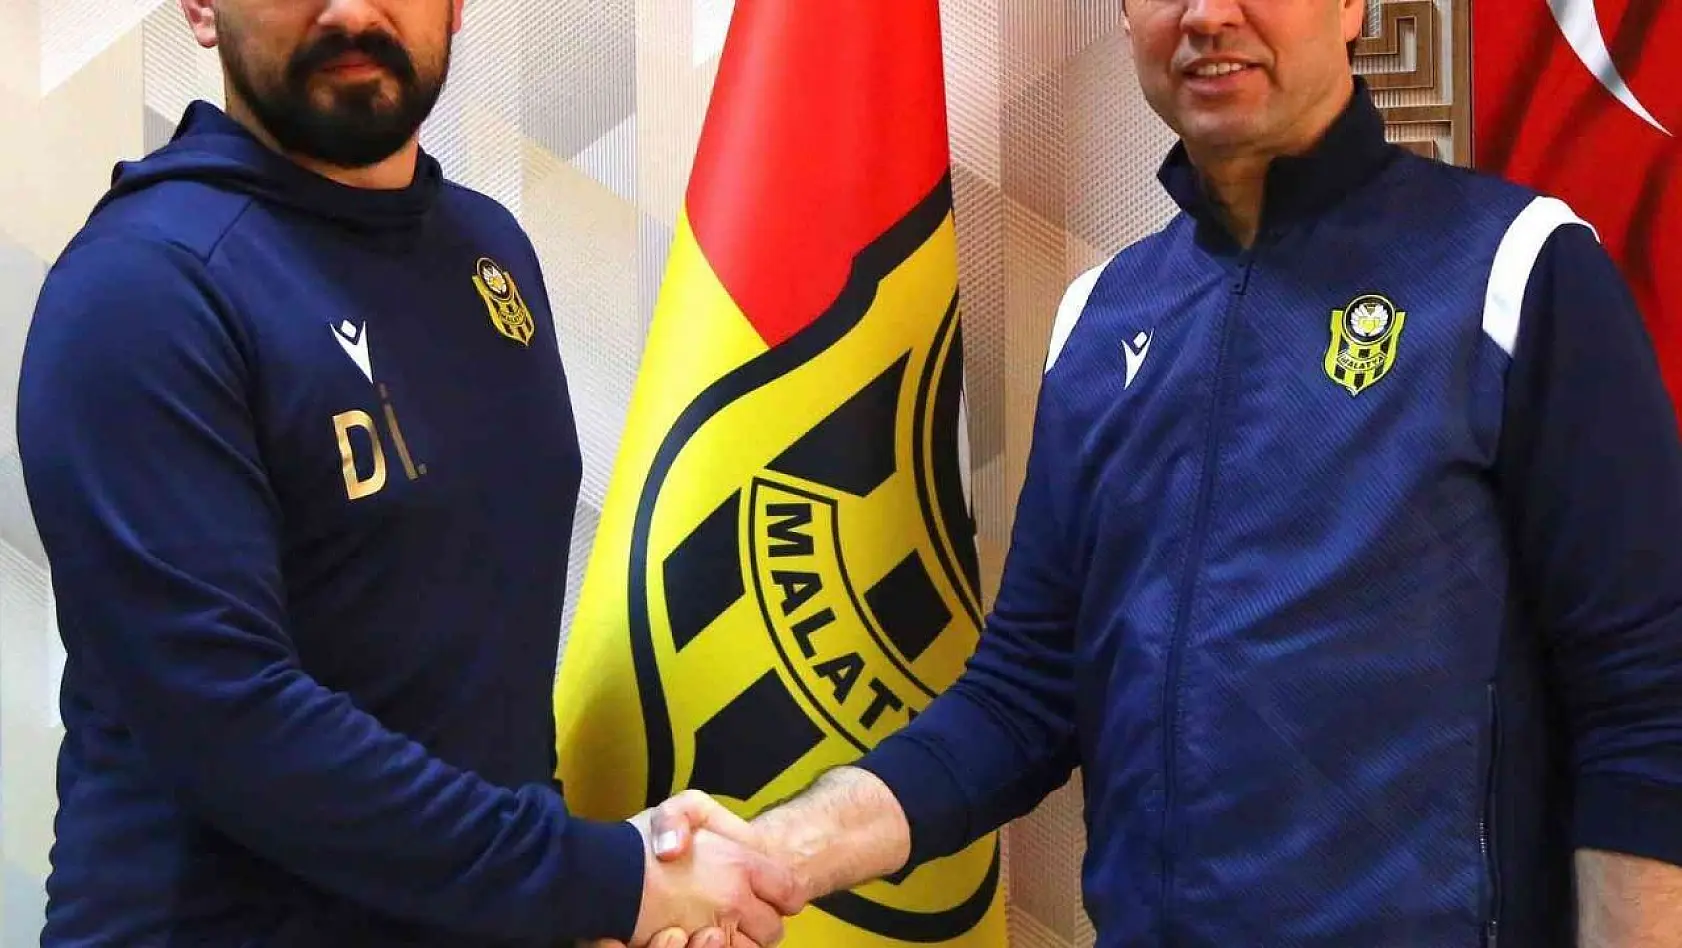 Yeni Malatyaspor'da Teknik Direktör Cihat Arslan ile yollar ayrıldı